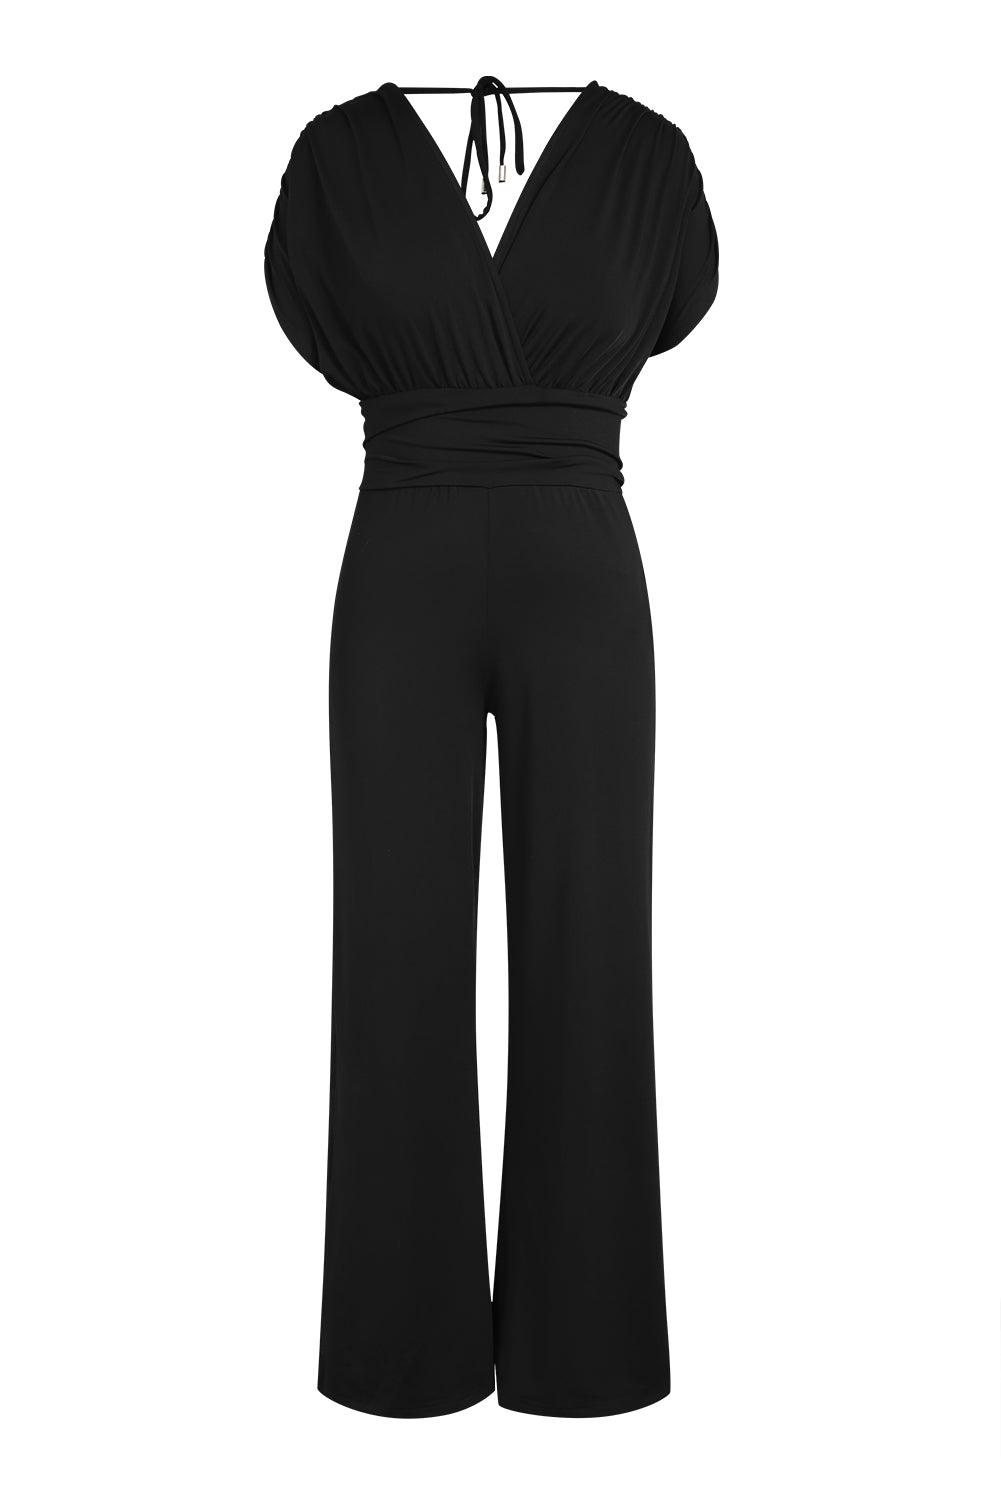 Black V-Neck Dolman Sleeves Wide Leg Jumpsuit - Vesteeto